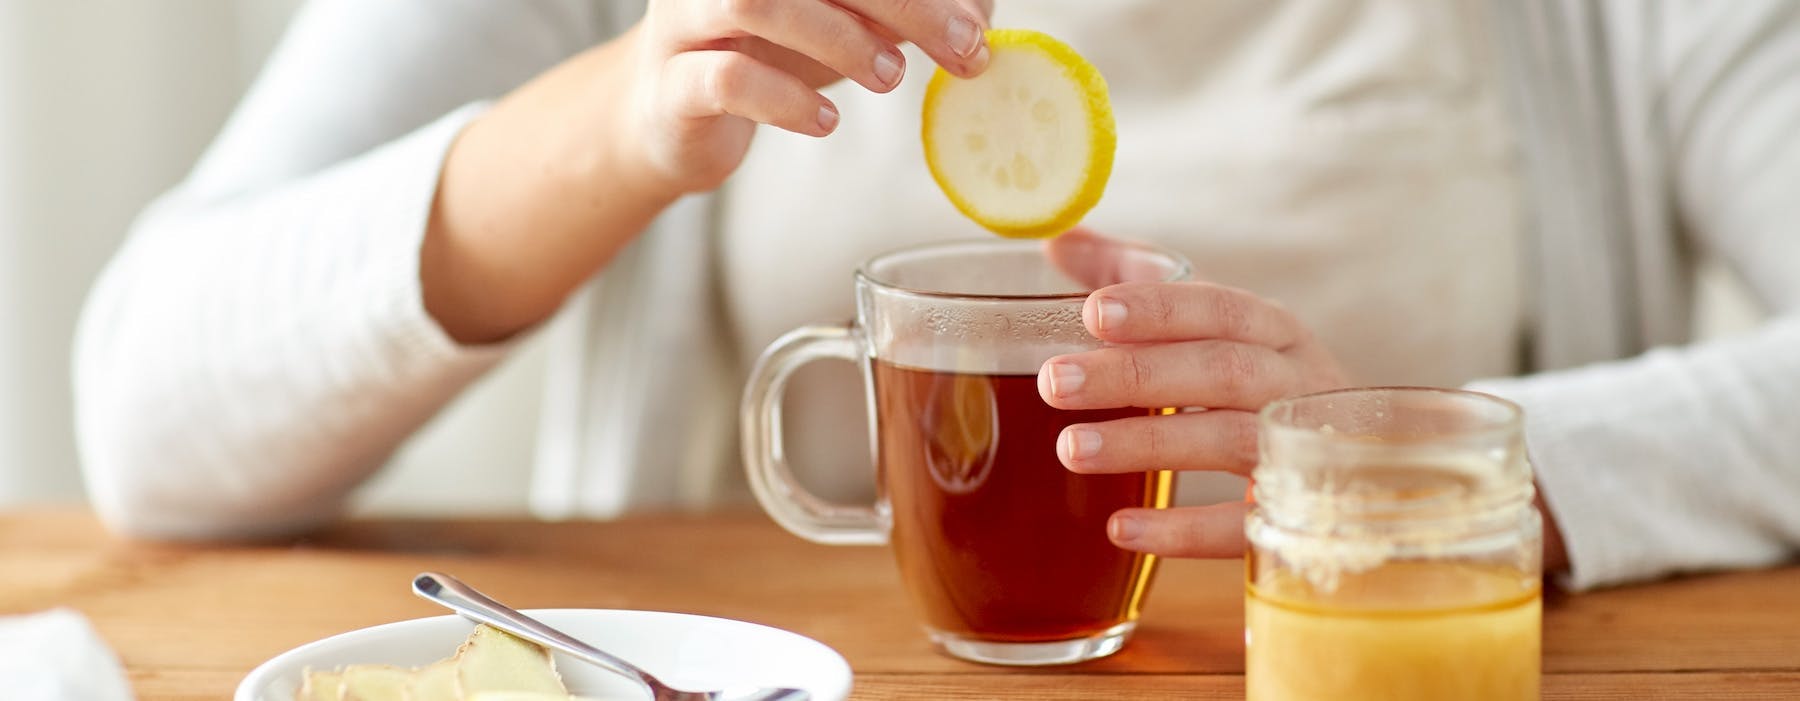 A woman preparing tea with lemon